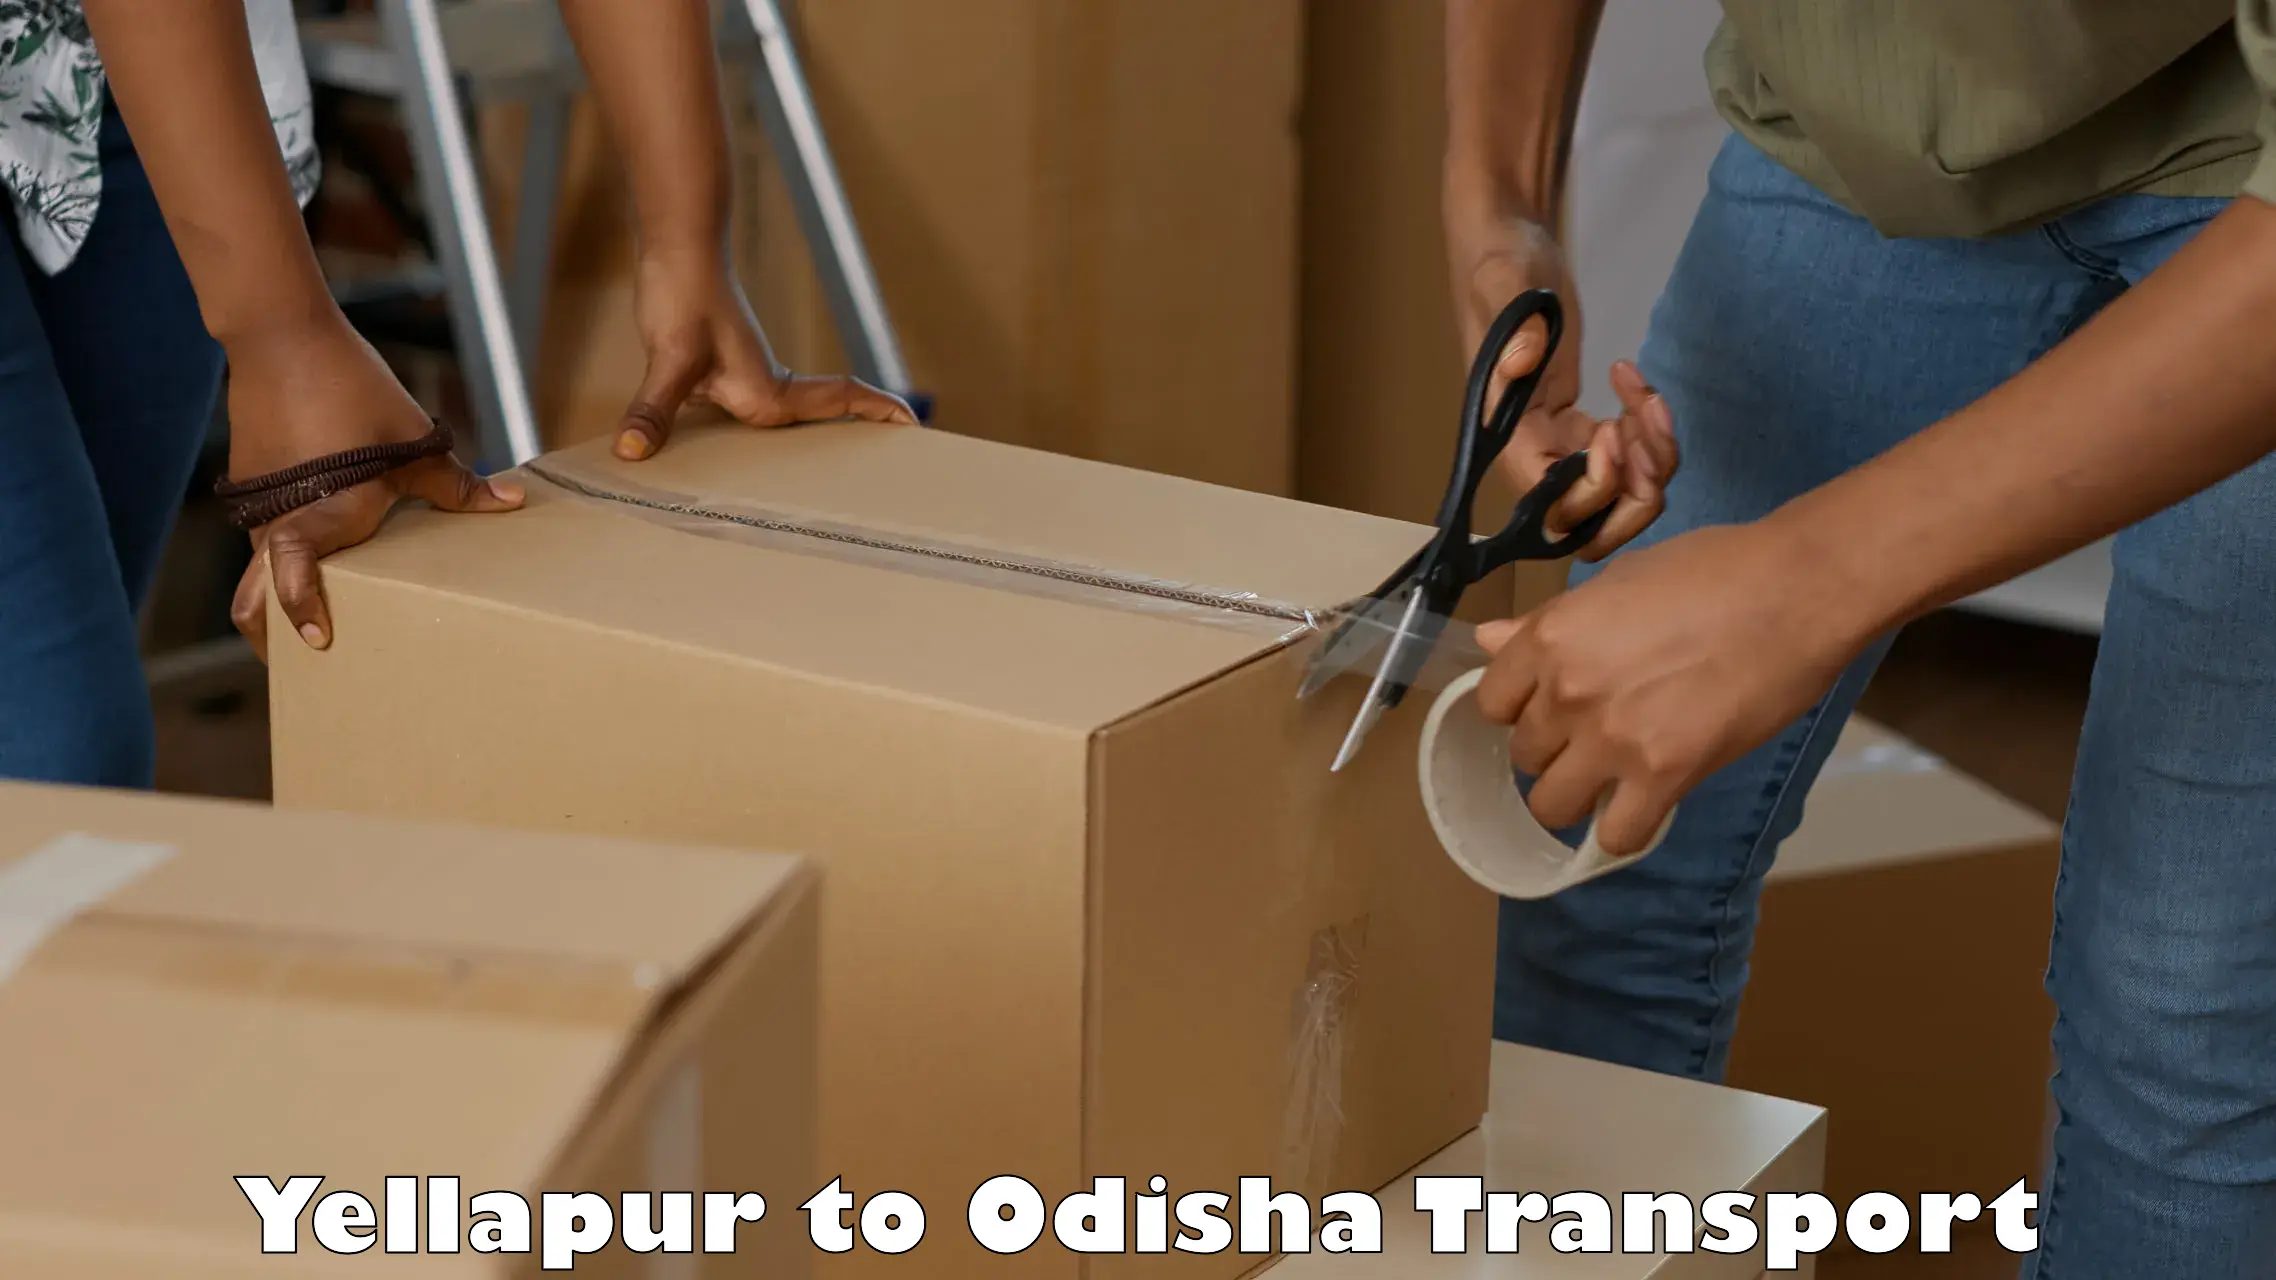 Road transport online services Yellapur to Melchhamunda